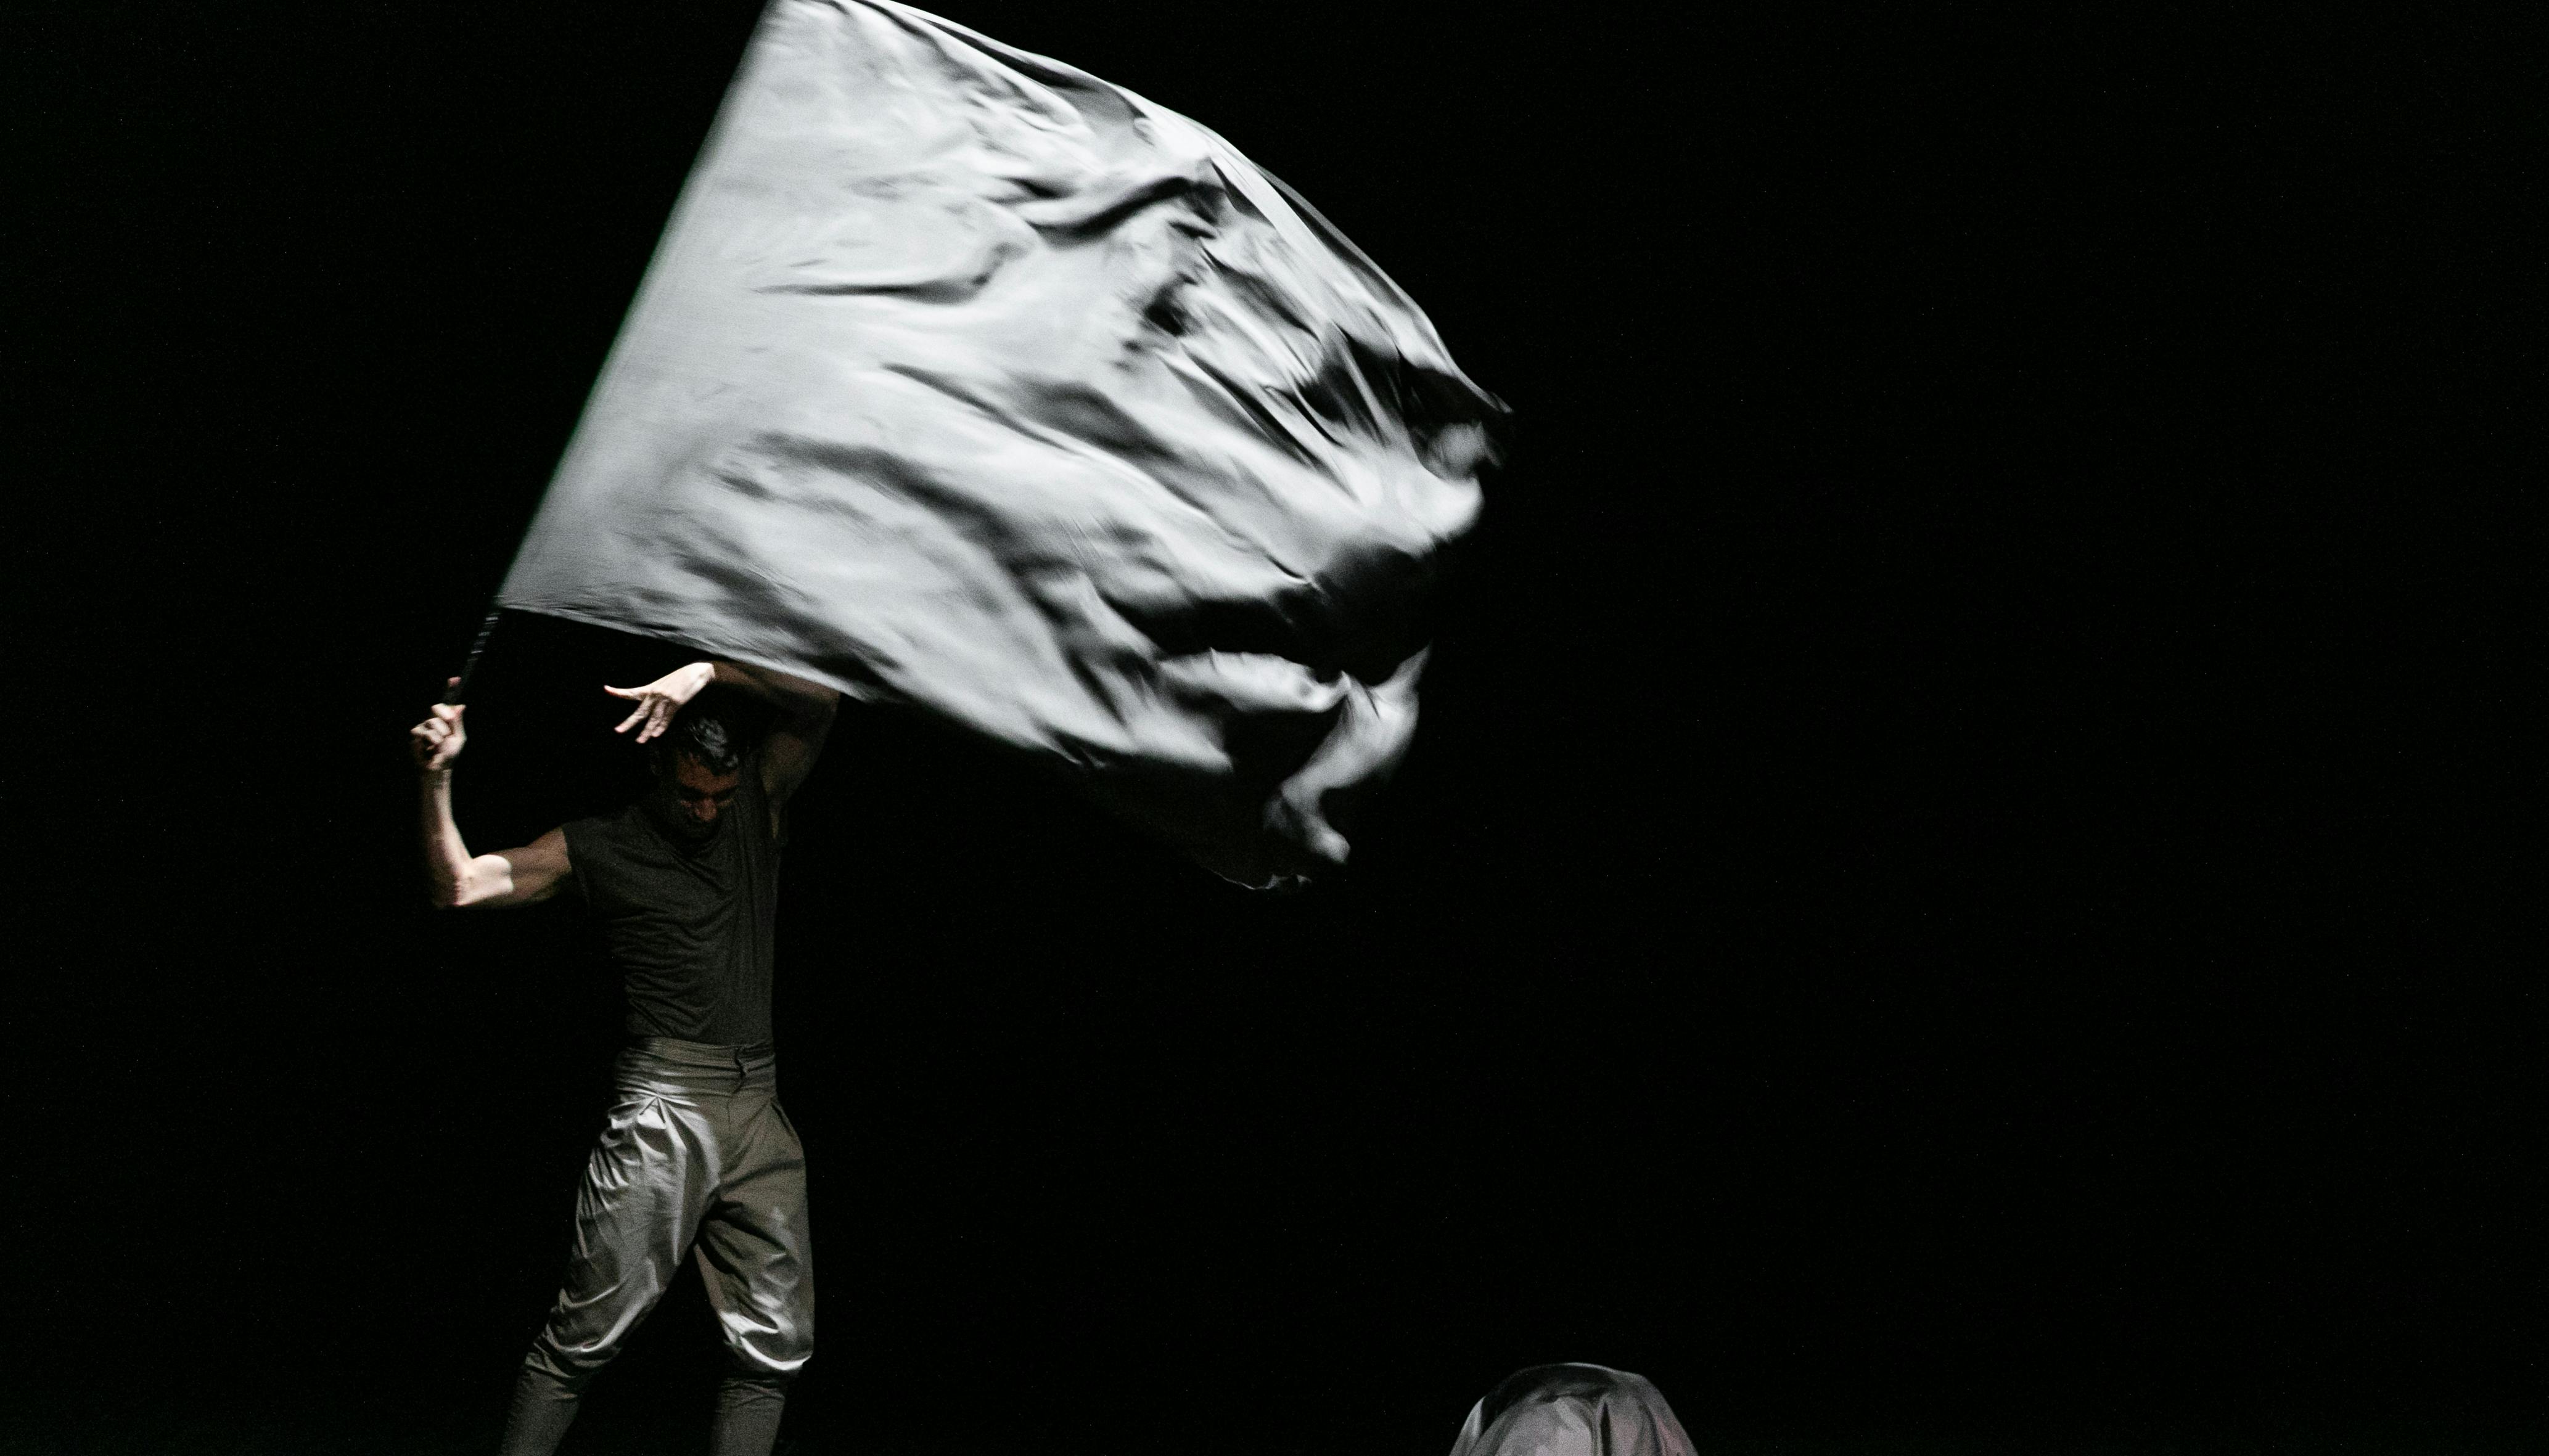 L'artista si esibisce sul palco indossando vestiti scuri e facendo sventolare una bandiera grigia